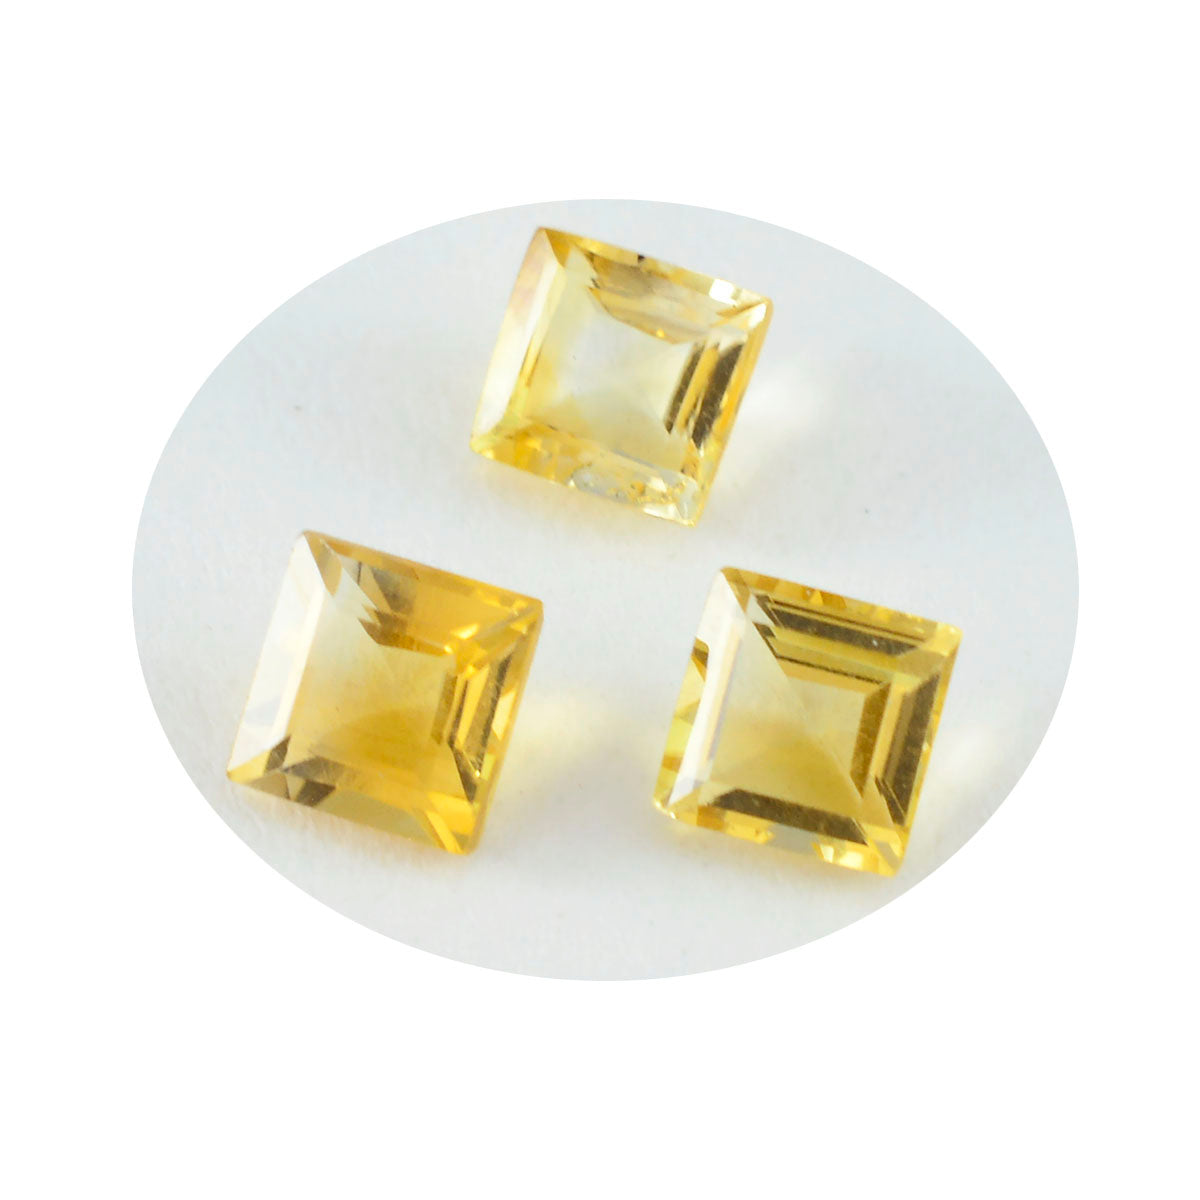 riyogems 1 шт., натуральный желтый цитрин, ограненные 8x8 мм, квадратной формы, красивое качество, свободные драгоценные камни